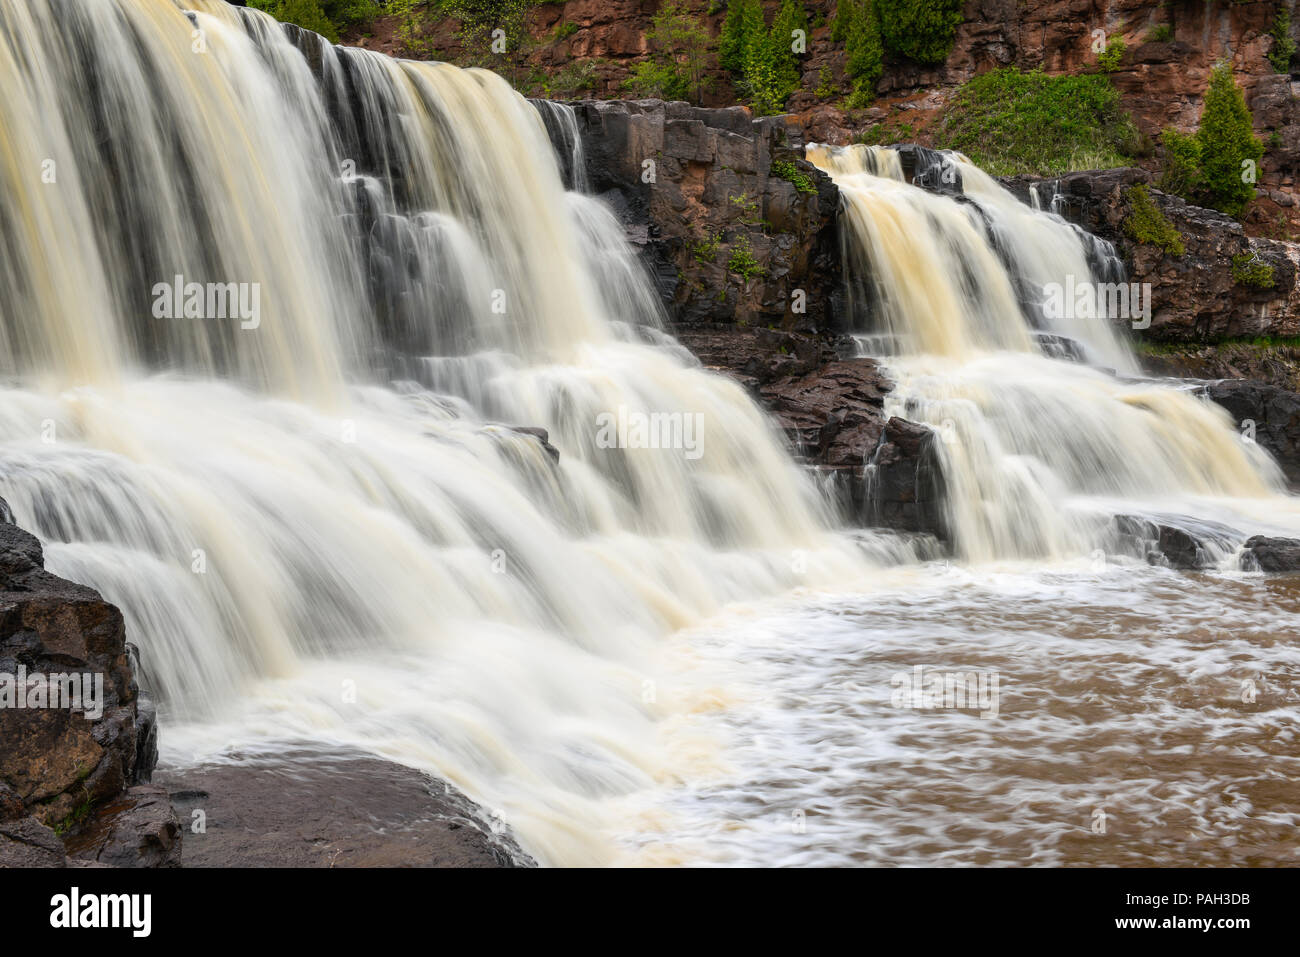 Stachelbeere Wasserfälle, Stachelbeere Falls State Park, MN, USA, durch die Bruce Montagne/Dembinsky Foto Assoc Stockfoto